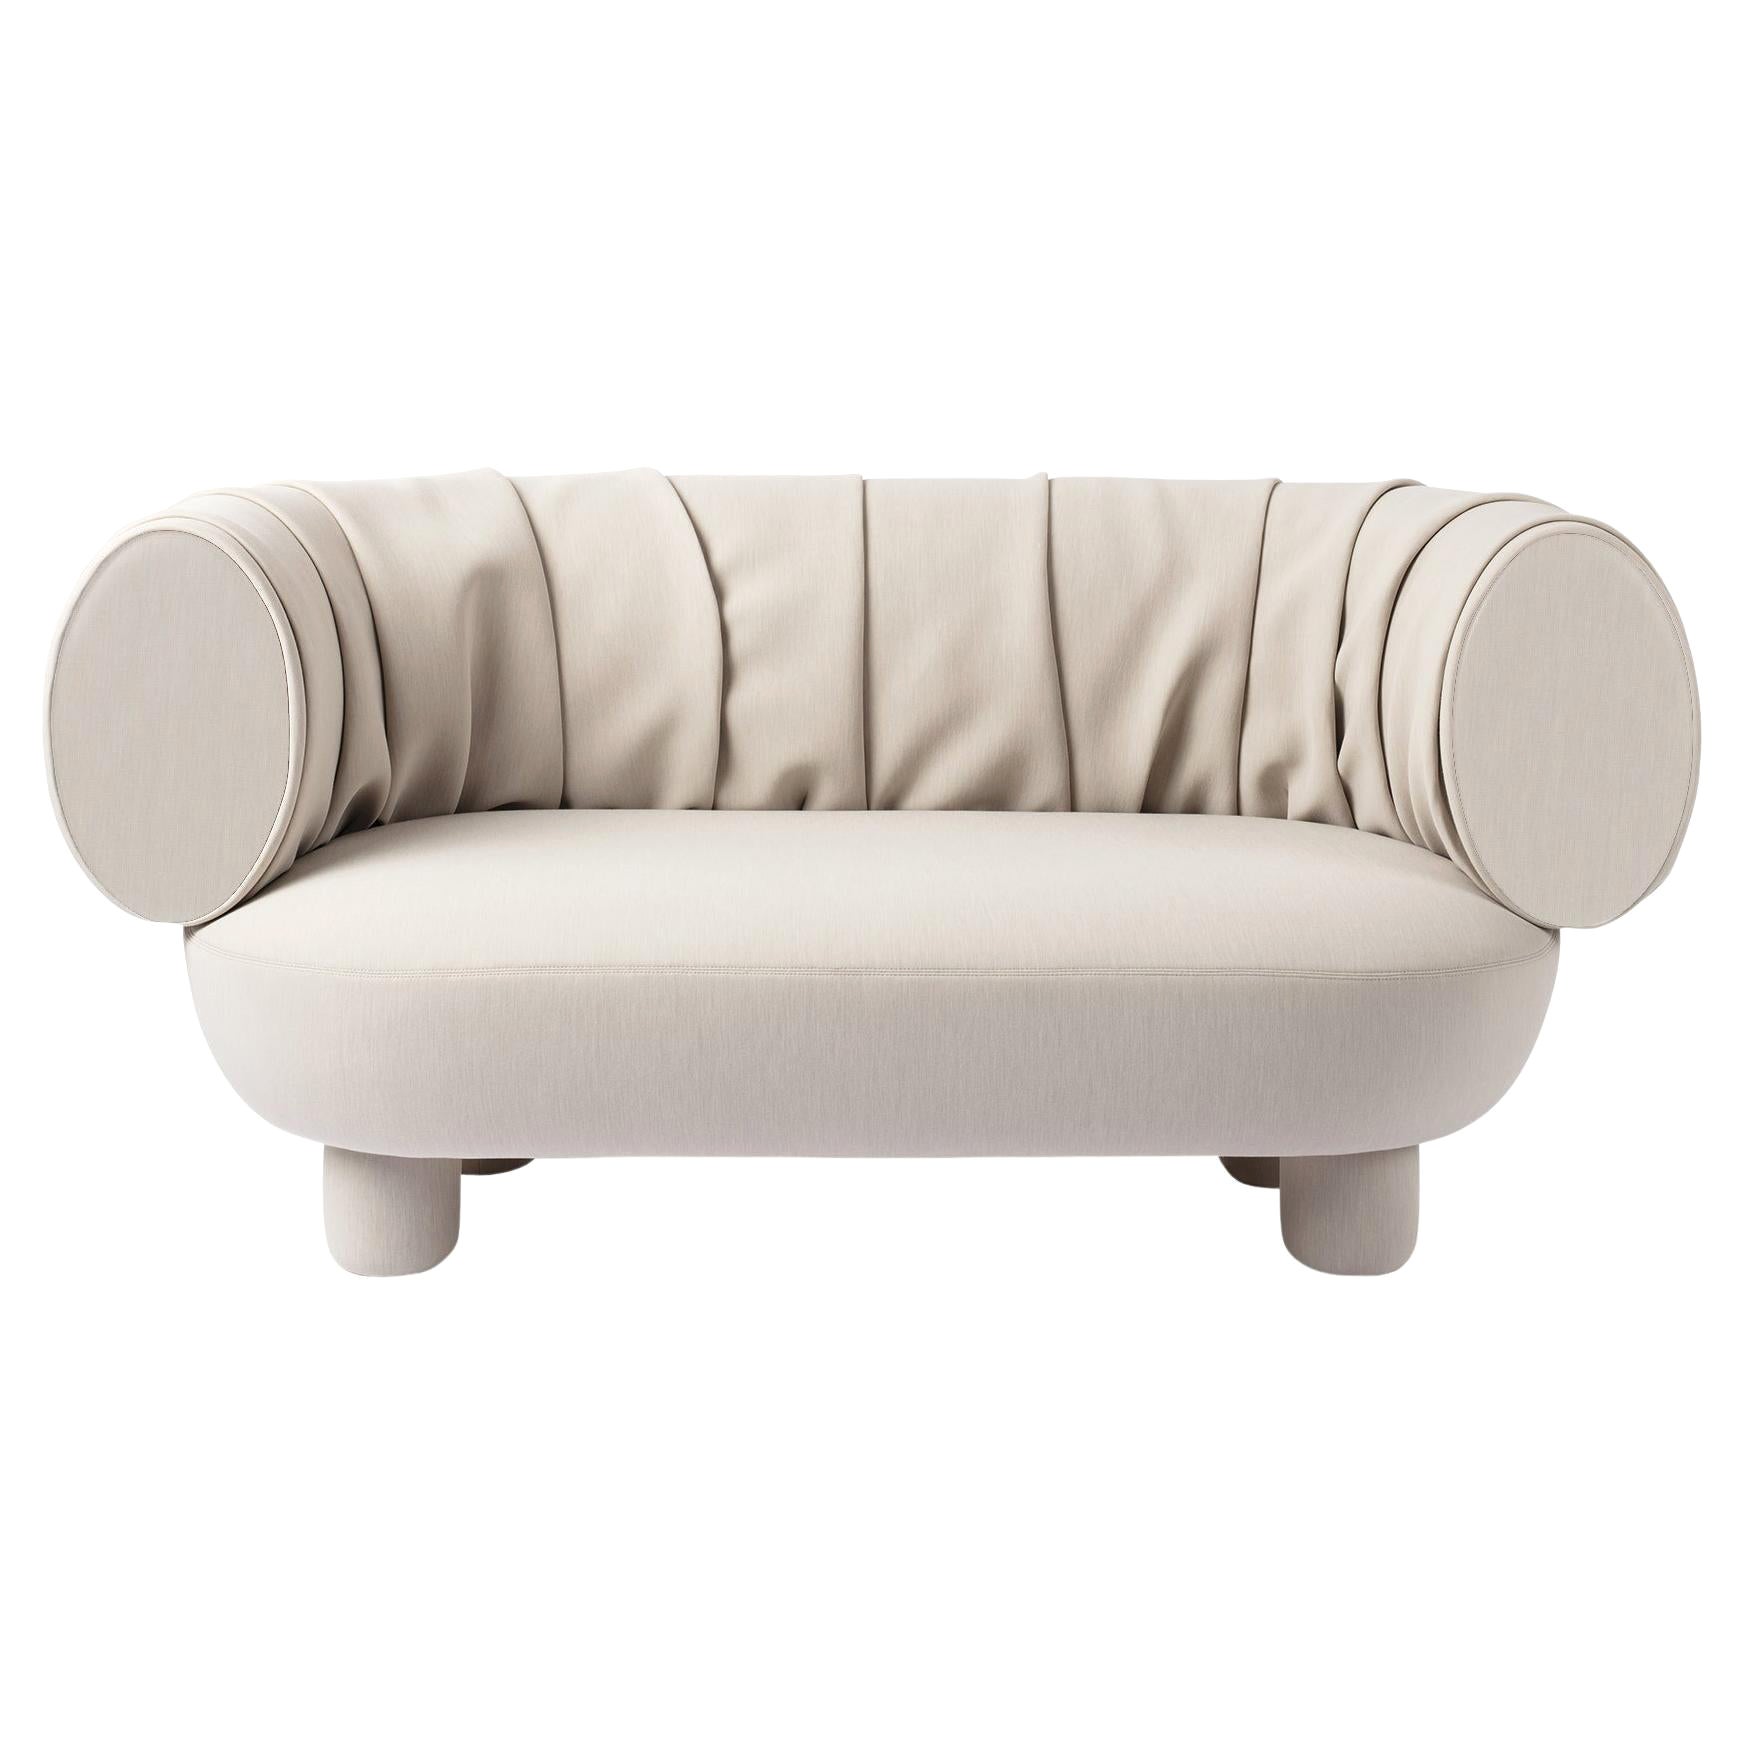 Sumo-Sofa, entworfen von Thomas Dariel